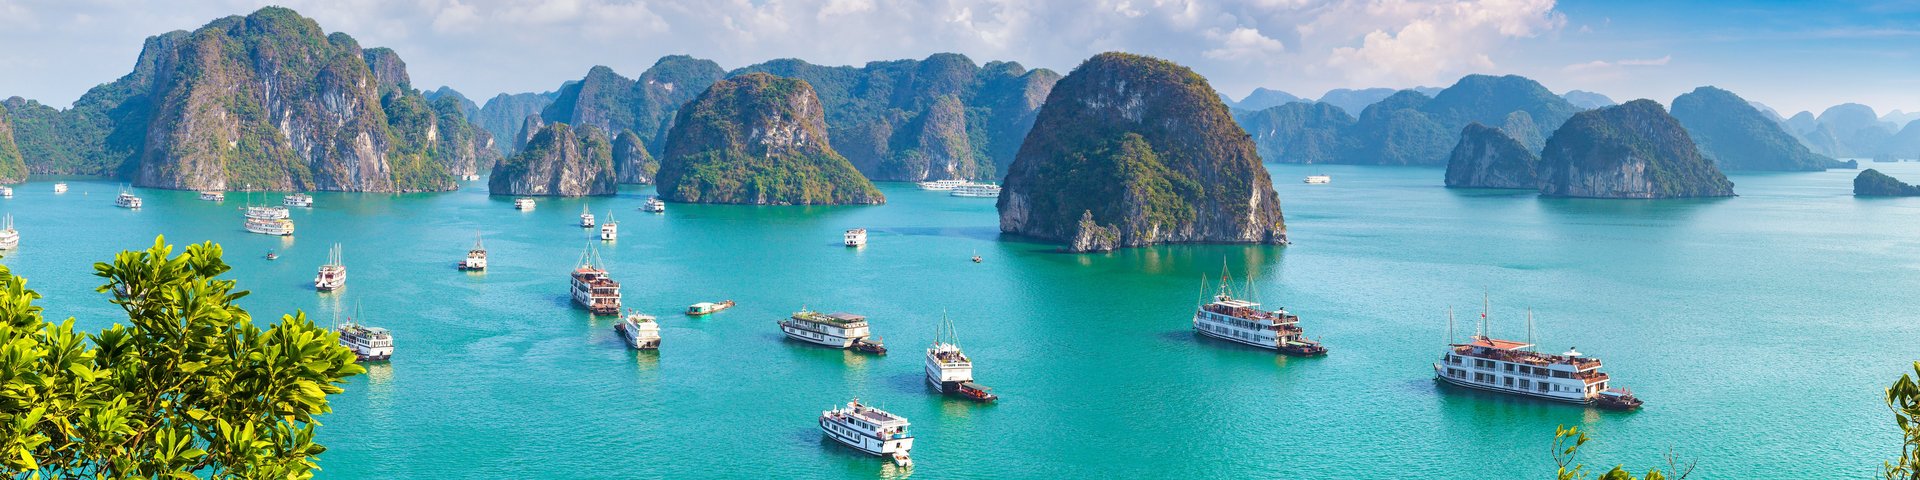 Viele Schiffe in der Inselwelt der Halong Bucht in Vietnam